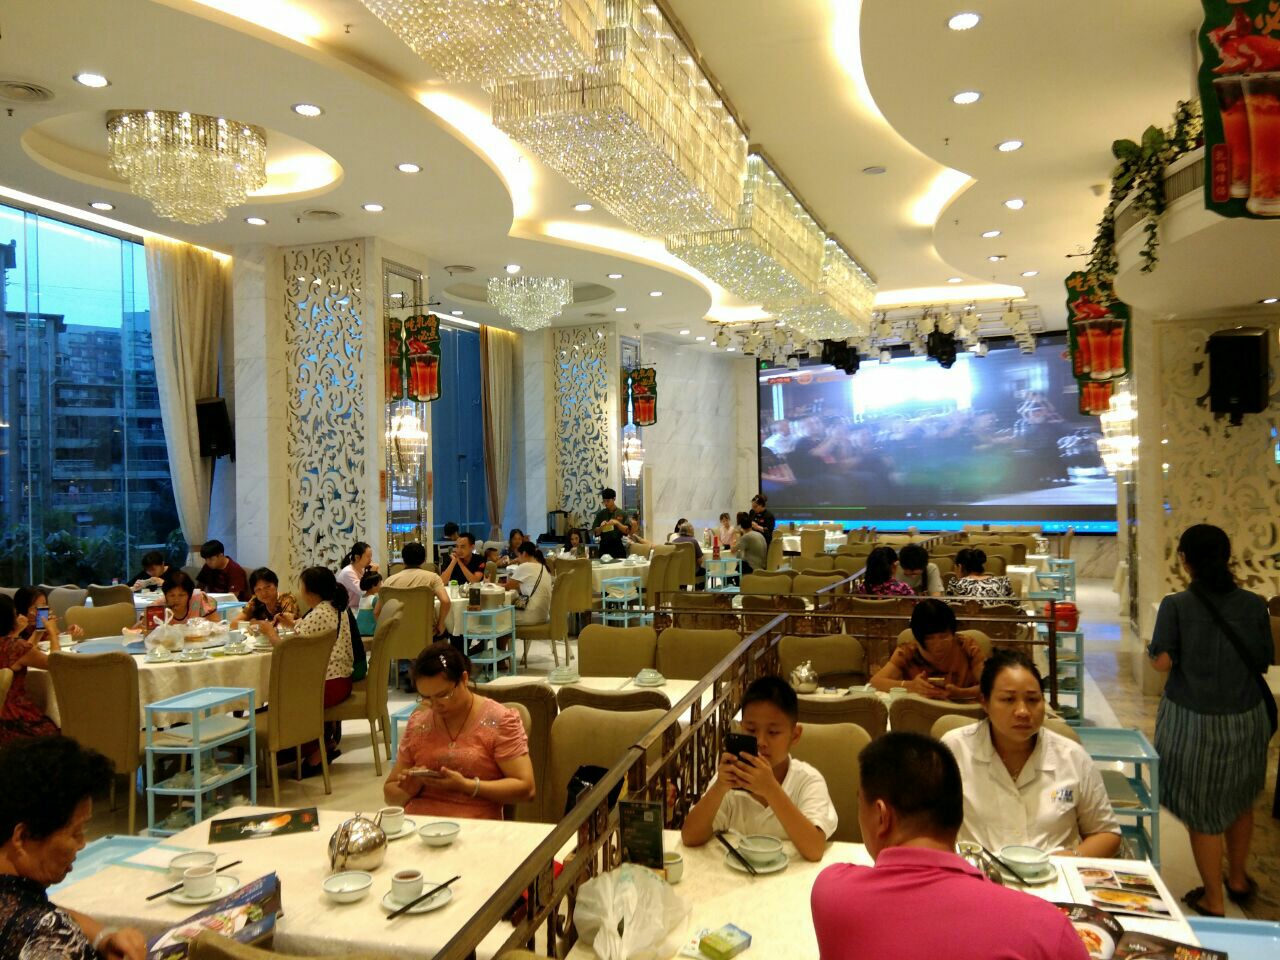 将军鸽餐厅设计---餐厅空间设计---餐饮营销策划公司,餐饮品牌设计,餐厅空间装修设计-深圳腾锐品牌设计